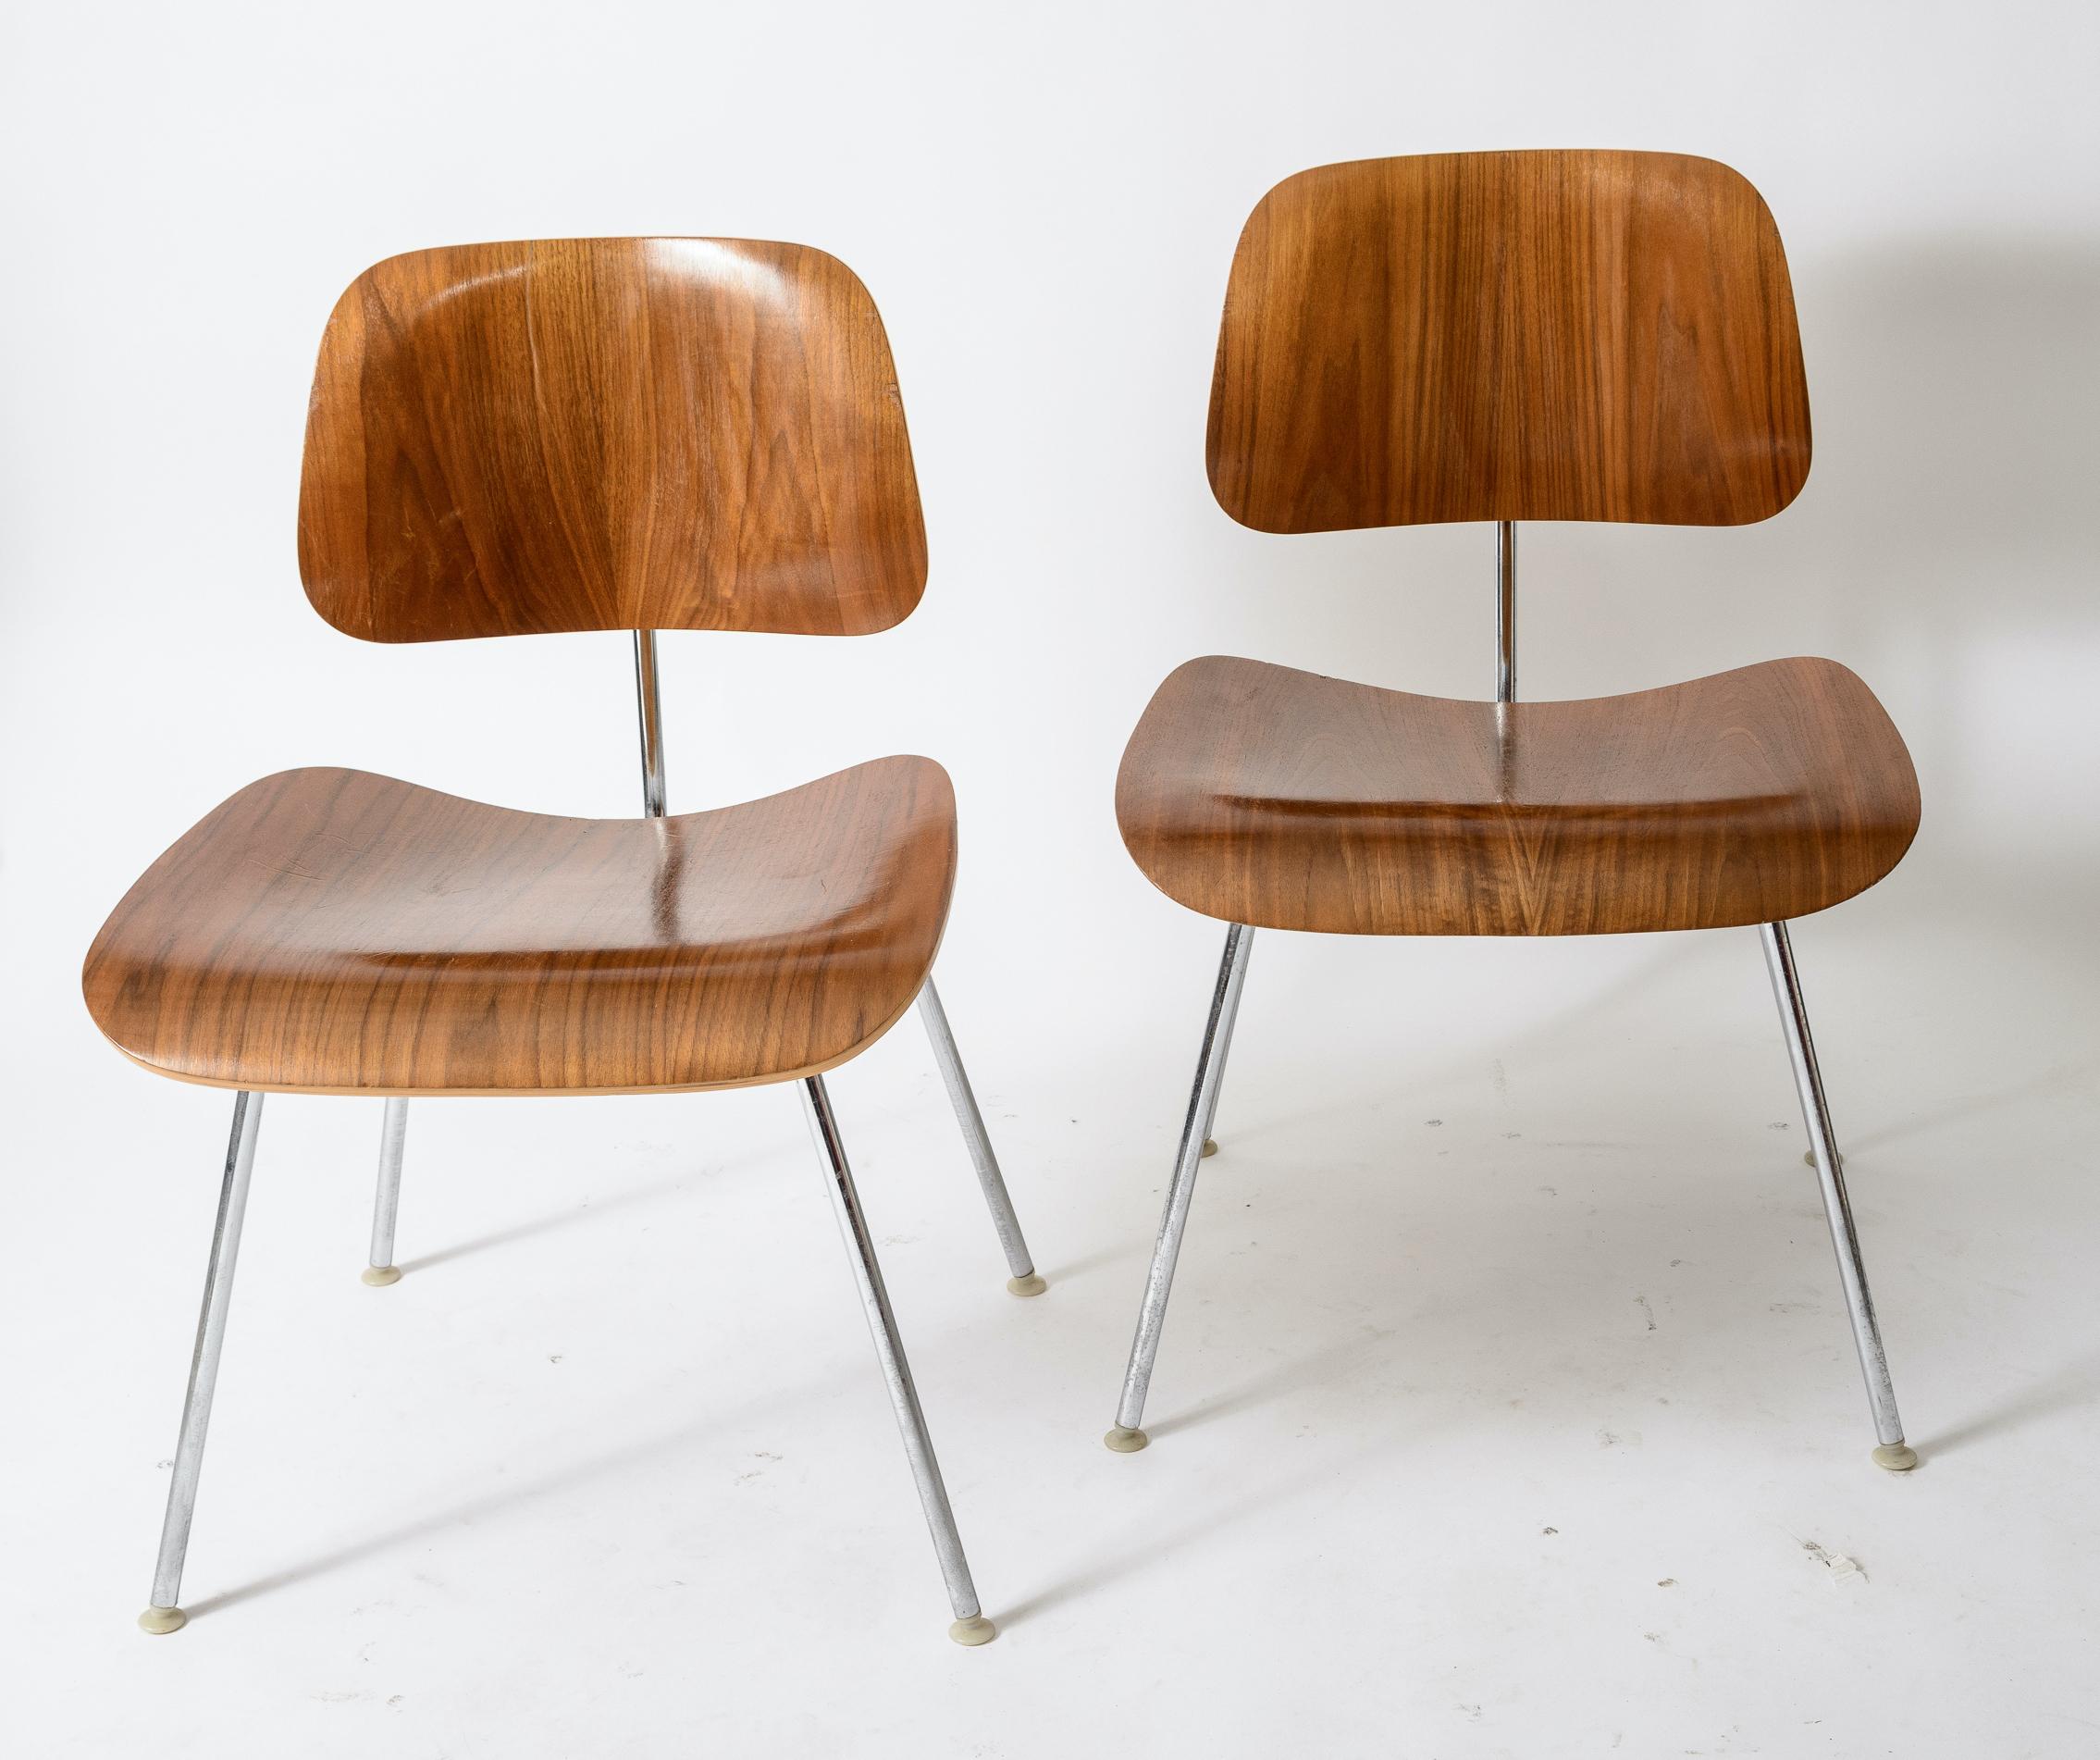 Un ensemble de 6 chaises Eames DCM
Sièges et dossiers en noyer
Bon grain
Production des années 1970